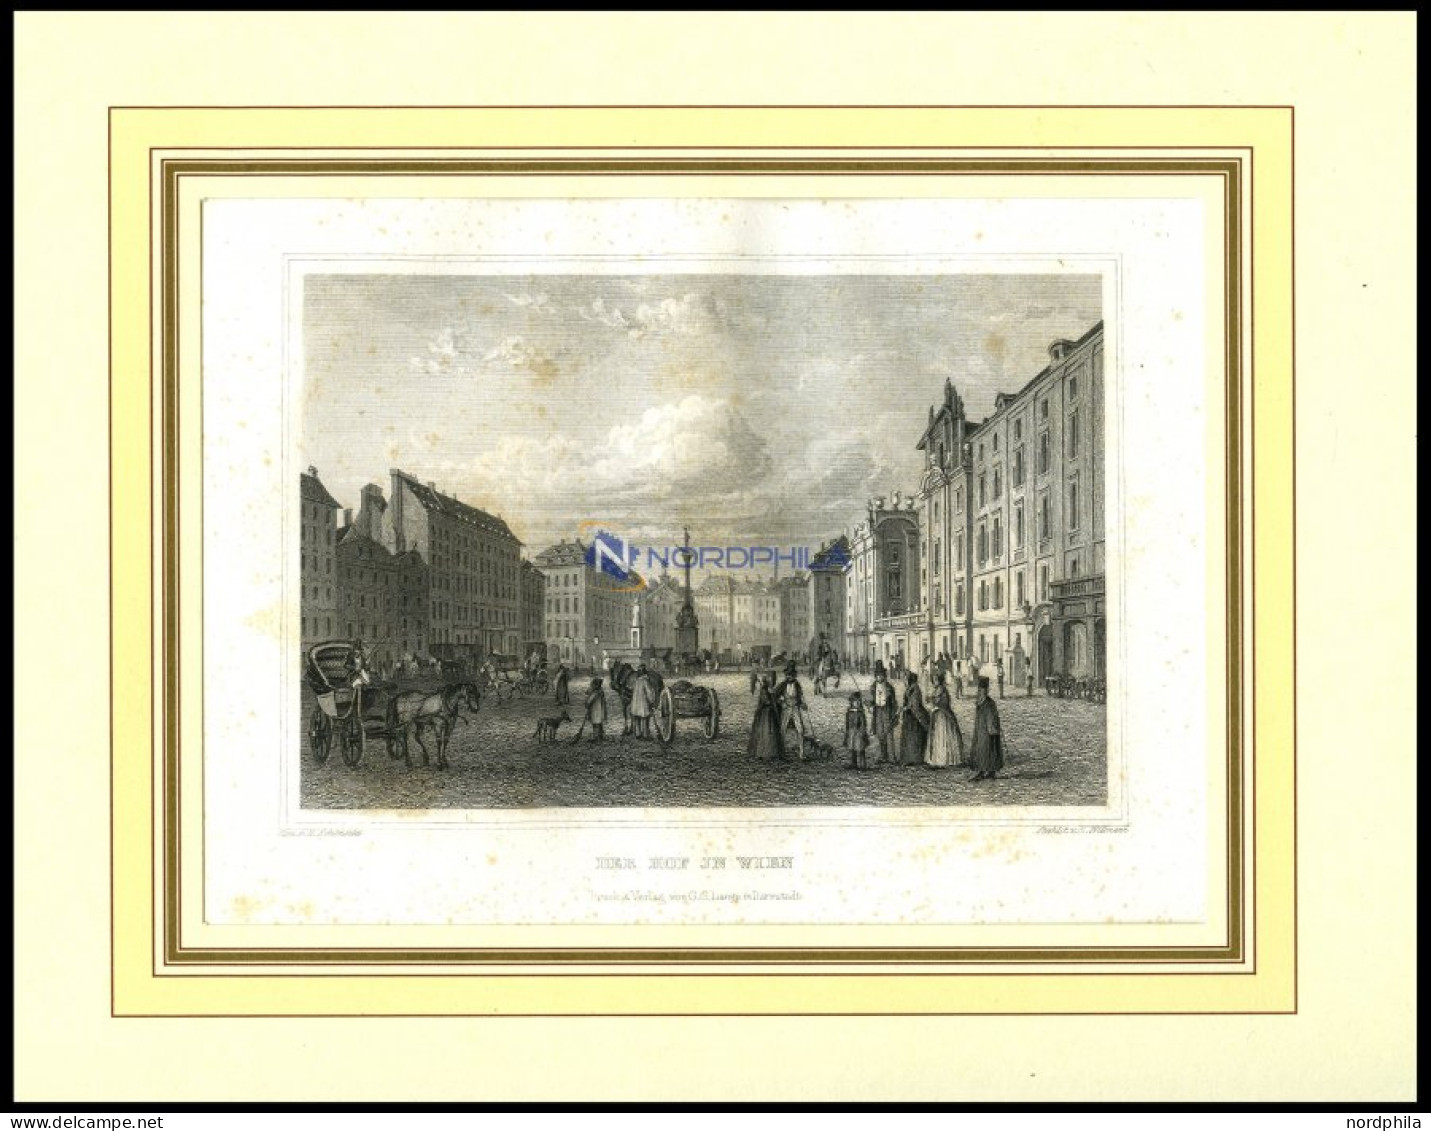 WIEN: Der Hof In Wien Mit Hübscher Personenstaffage Im Vordergrund, Stahlstich Von Schönfeld/Willmann, 1840 - Lithographien